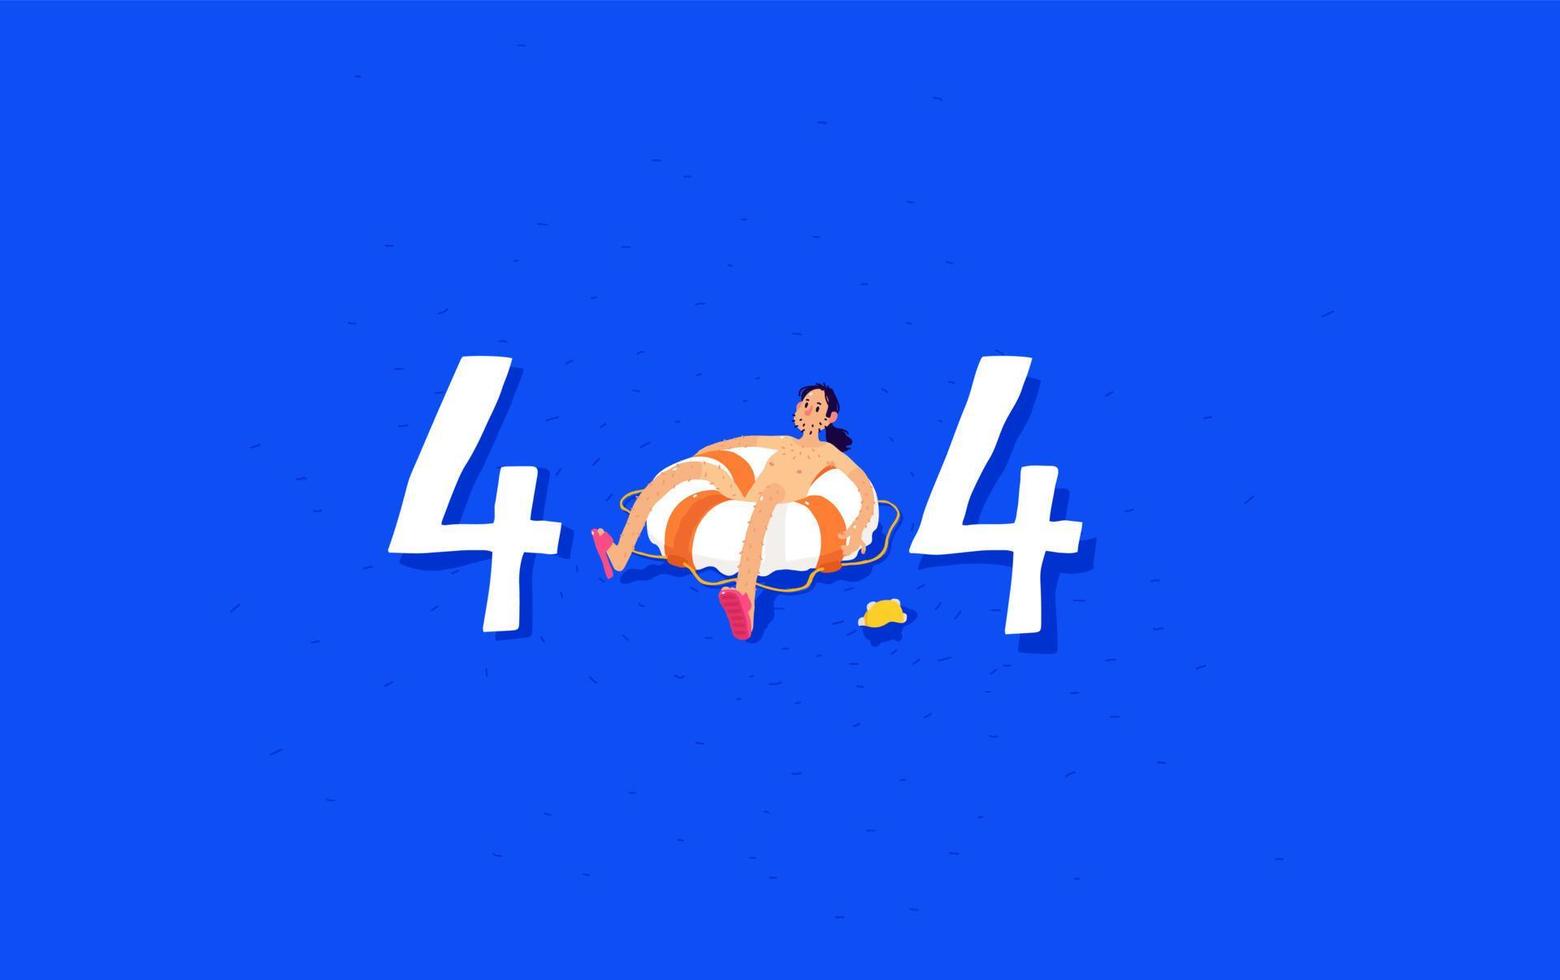 ilustração para a página 404. vetor. usuário no oceano em uma bóia salva-vidas. administrador do sistema com um pandeiro em uma tela azul da morte. metáfora. estilo simples dos desenhos animados. vetor